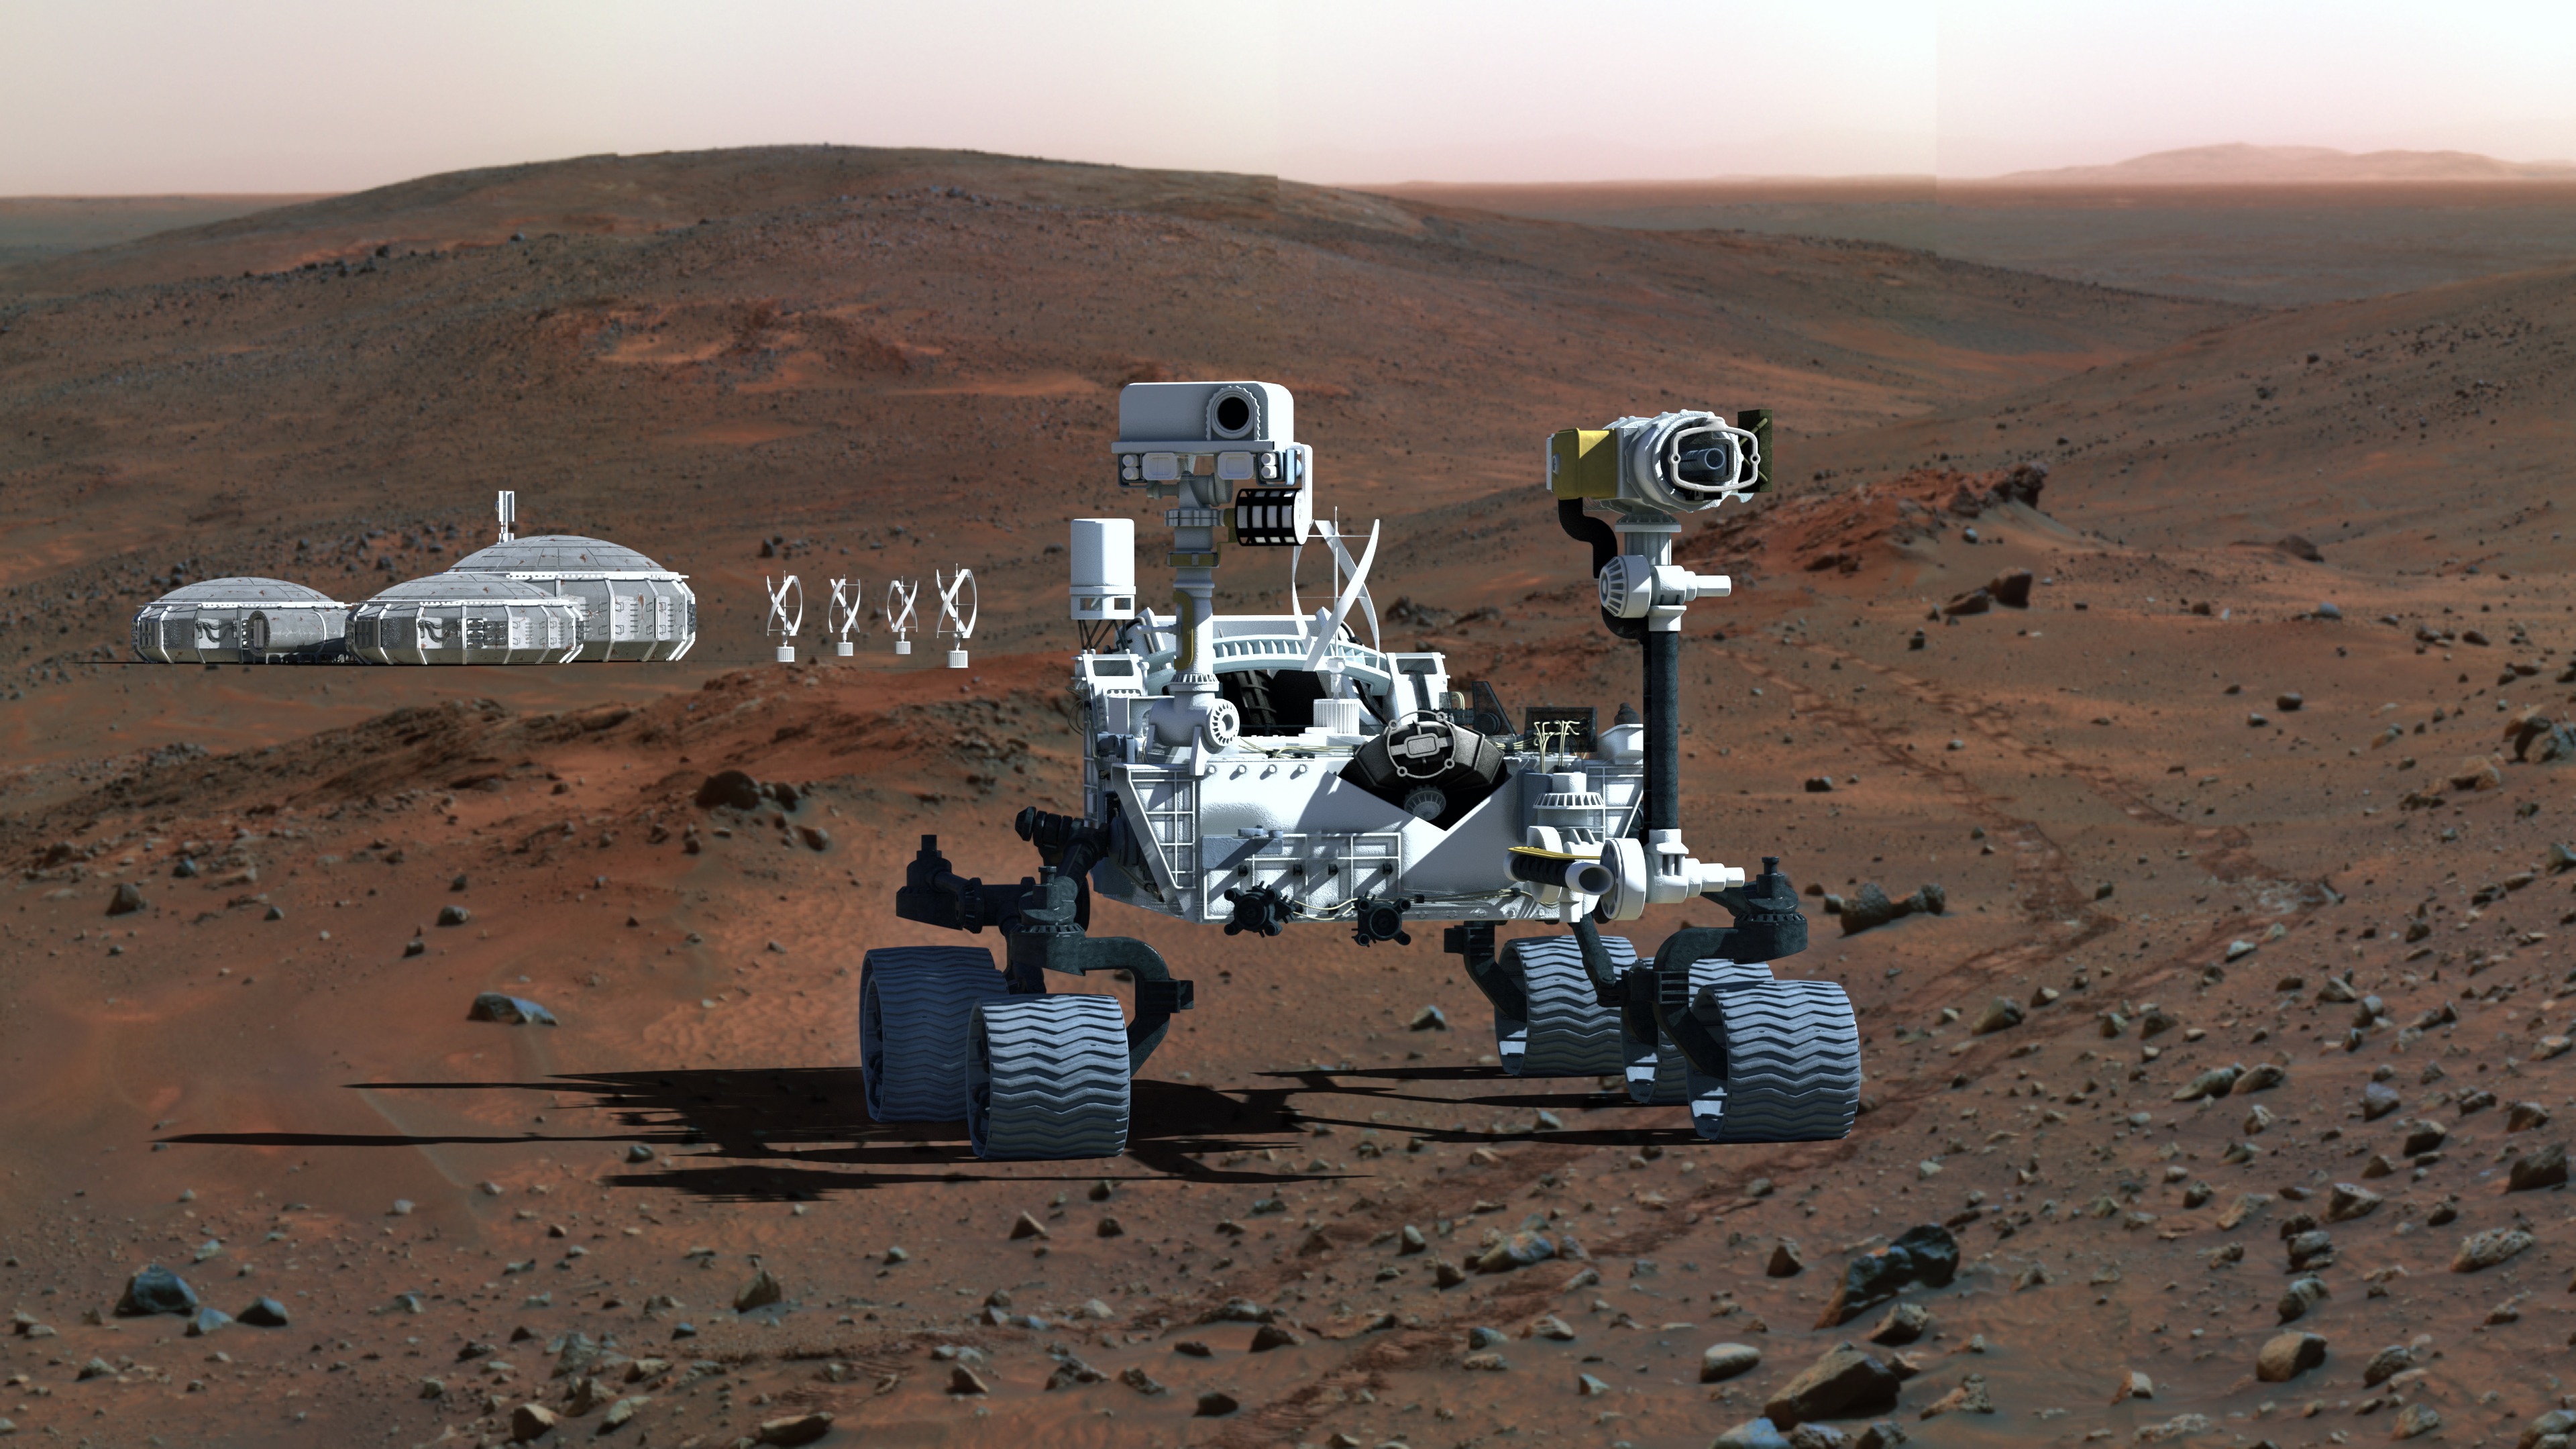 Tekniker desarrollará el primer generador eólico para Marte